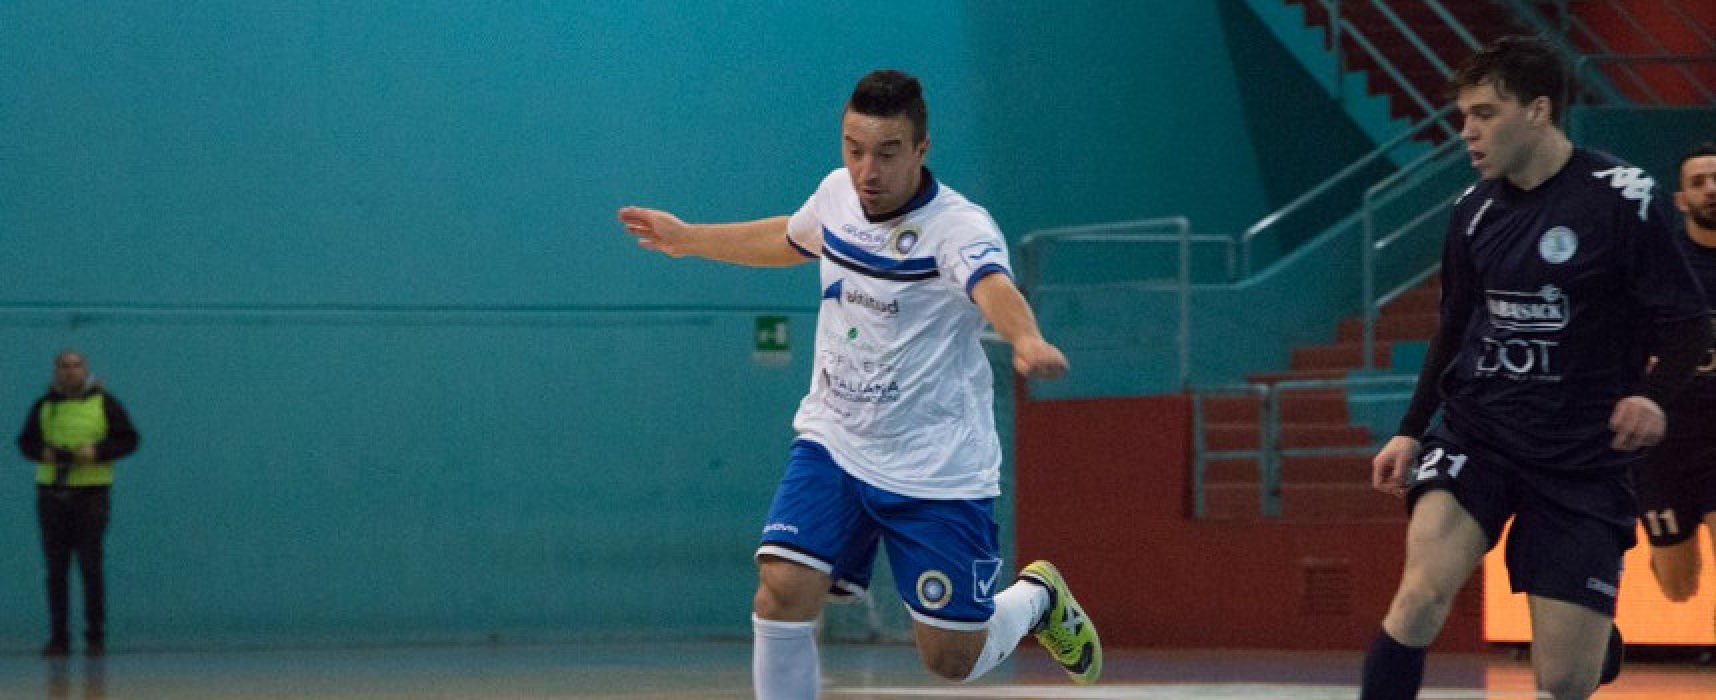 Futsal Bisceglie, buona la prestazione ma il Sandro Abate sbanca il “Paladolmen”